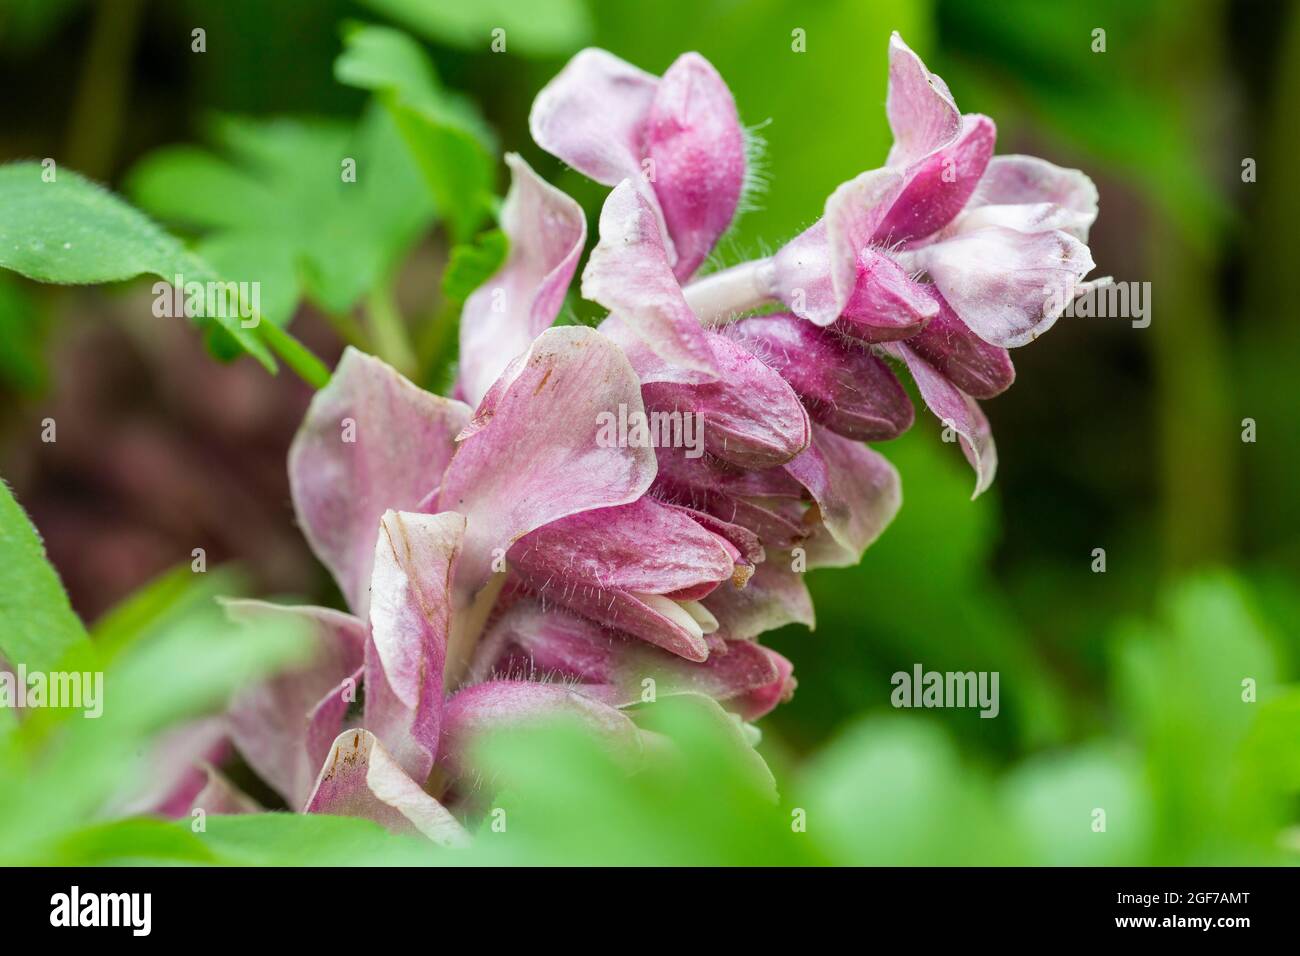 Common toothwort (Lathraea squamaria), Germany Stock Photo